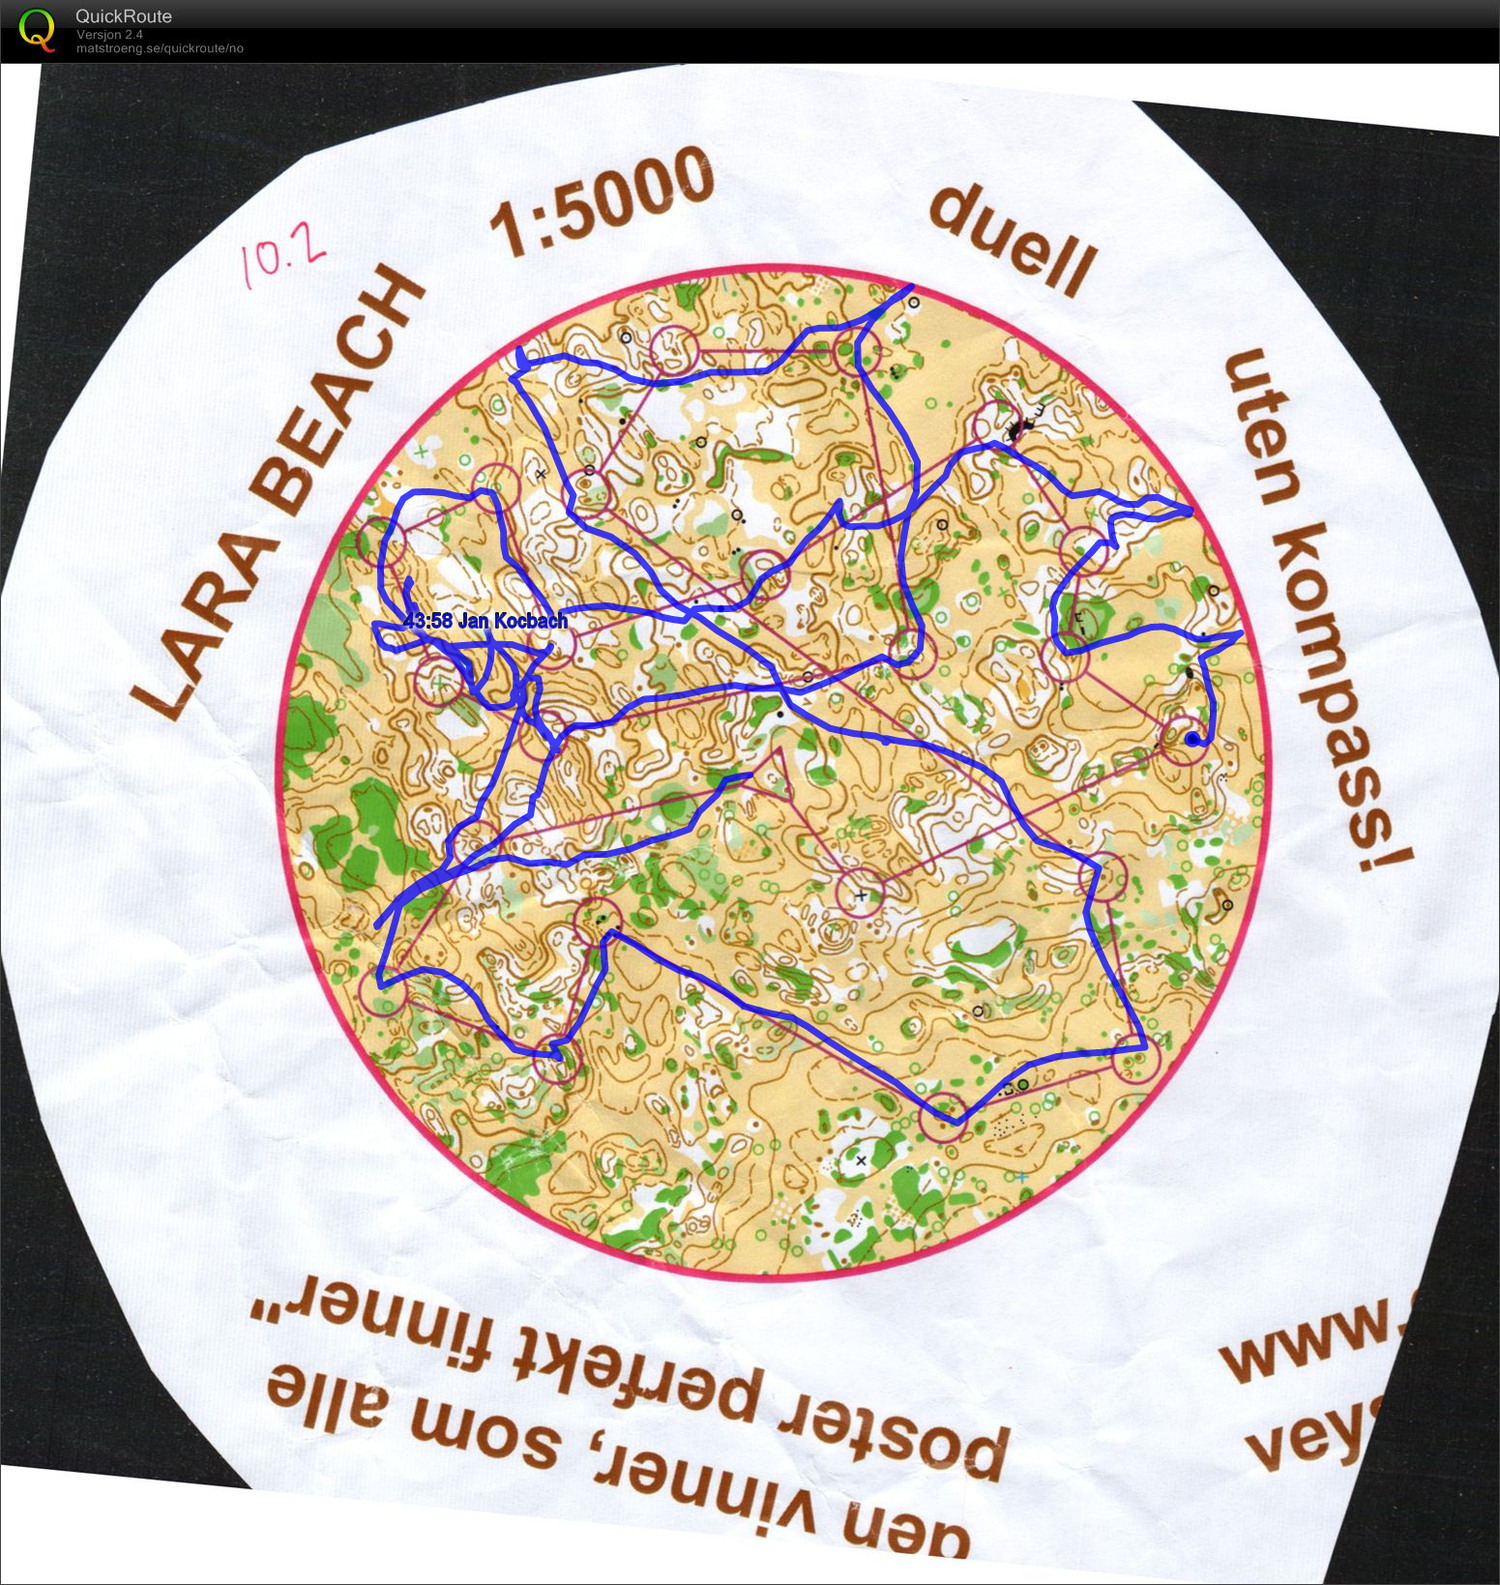 Circular map without compass (26.02.2013)